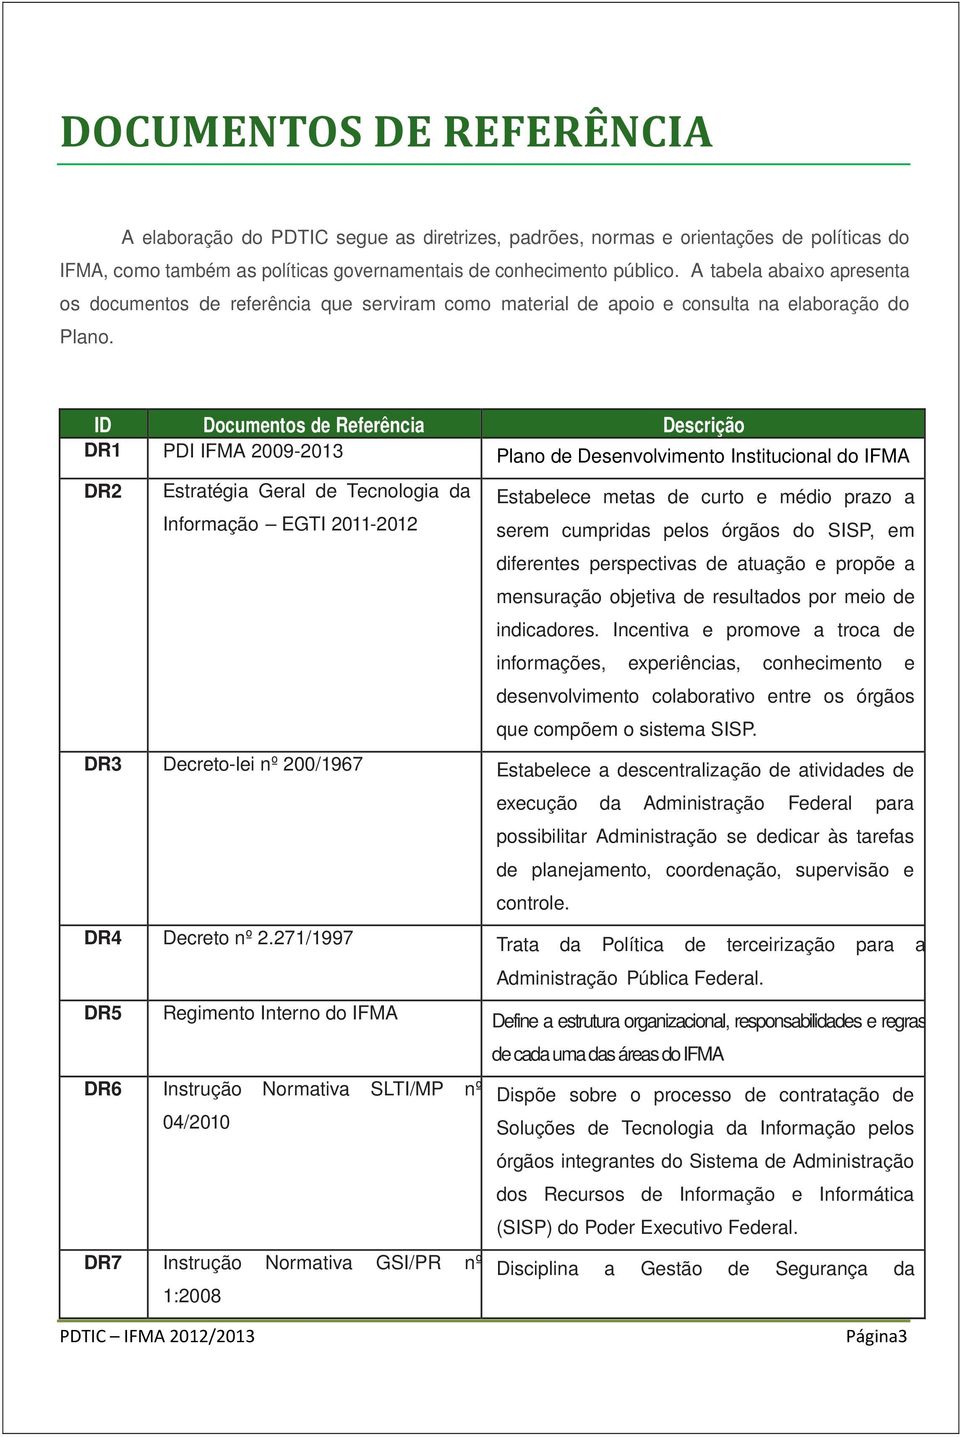 ID Documentos de Referência Descrição DR1 PDI IFMA 2009-2013 Plano de Desenvolvimento Institucional do IFMA DR2 Estratégia Geral de Tecnologia da Informação EGTI 2011-2012 Estabelece metas de curto e